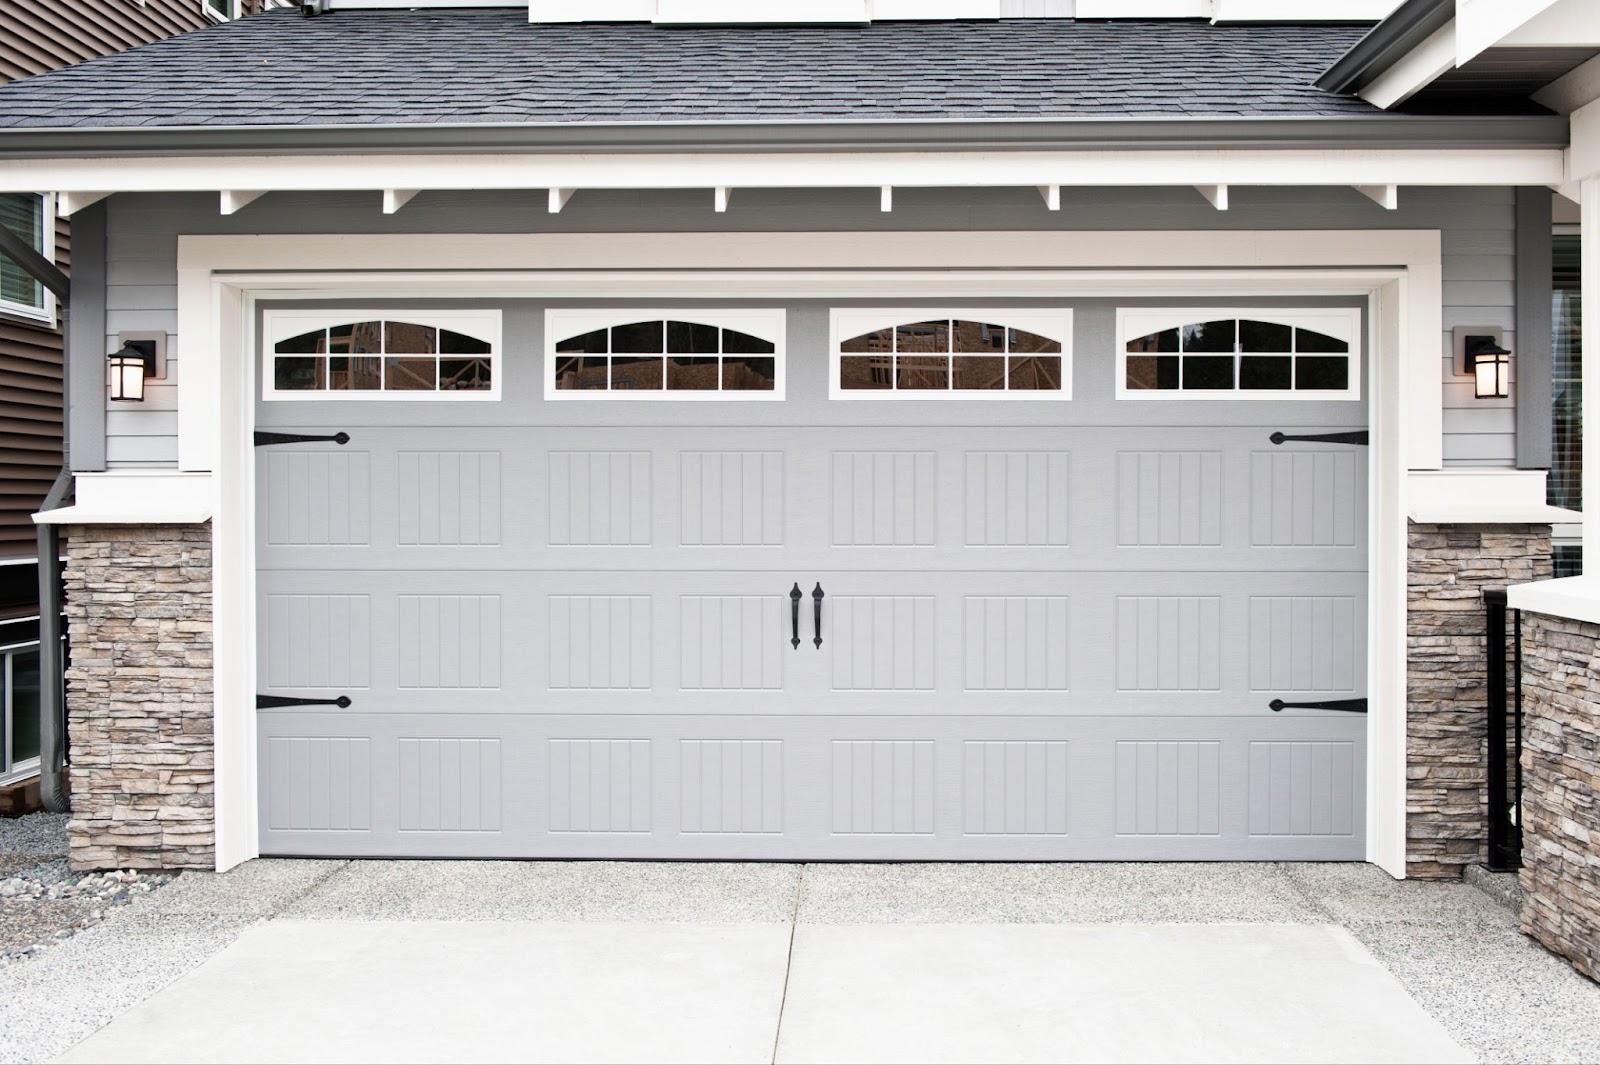 A gray garage door with windows, perfect for garage door replacement or getting a new garage door.